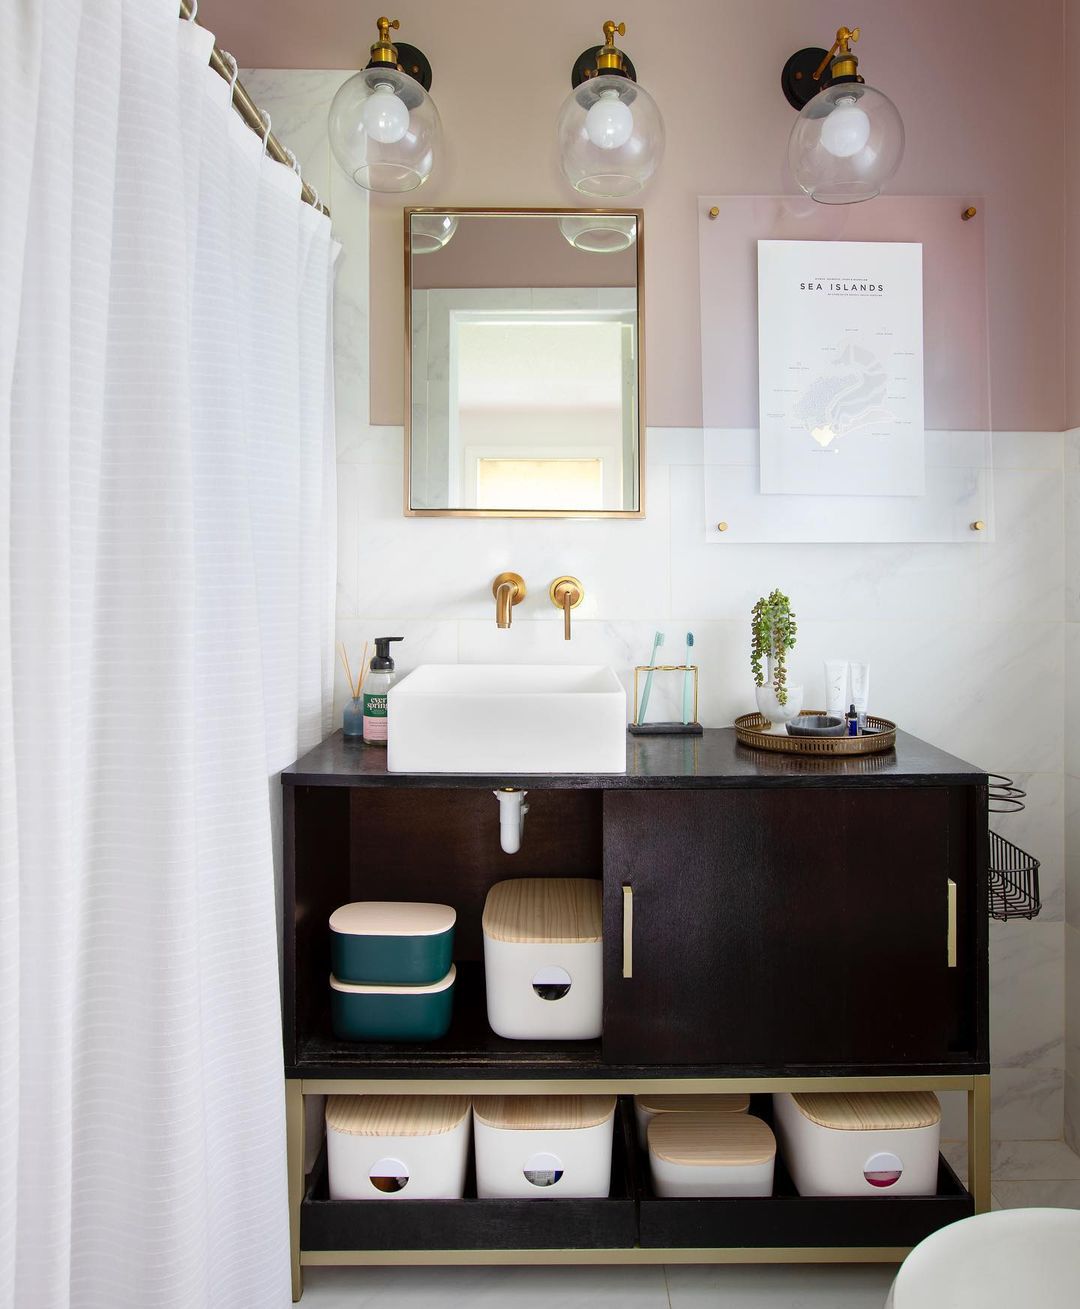 Stilvolle Aufbewahrungsbehälter in einem rosa-weißen Badezimmer